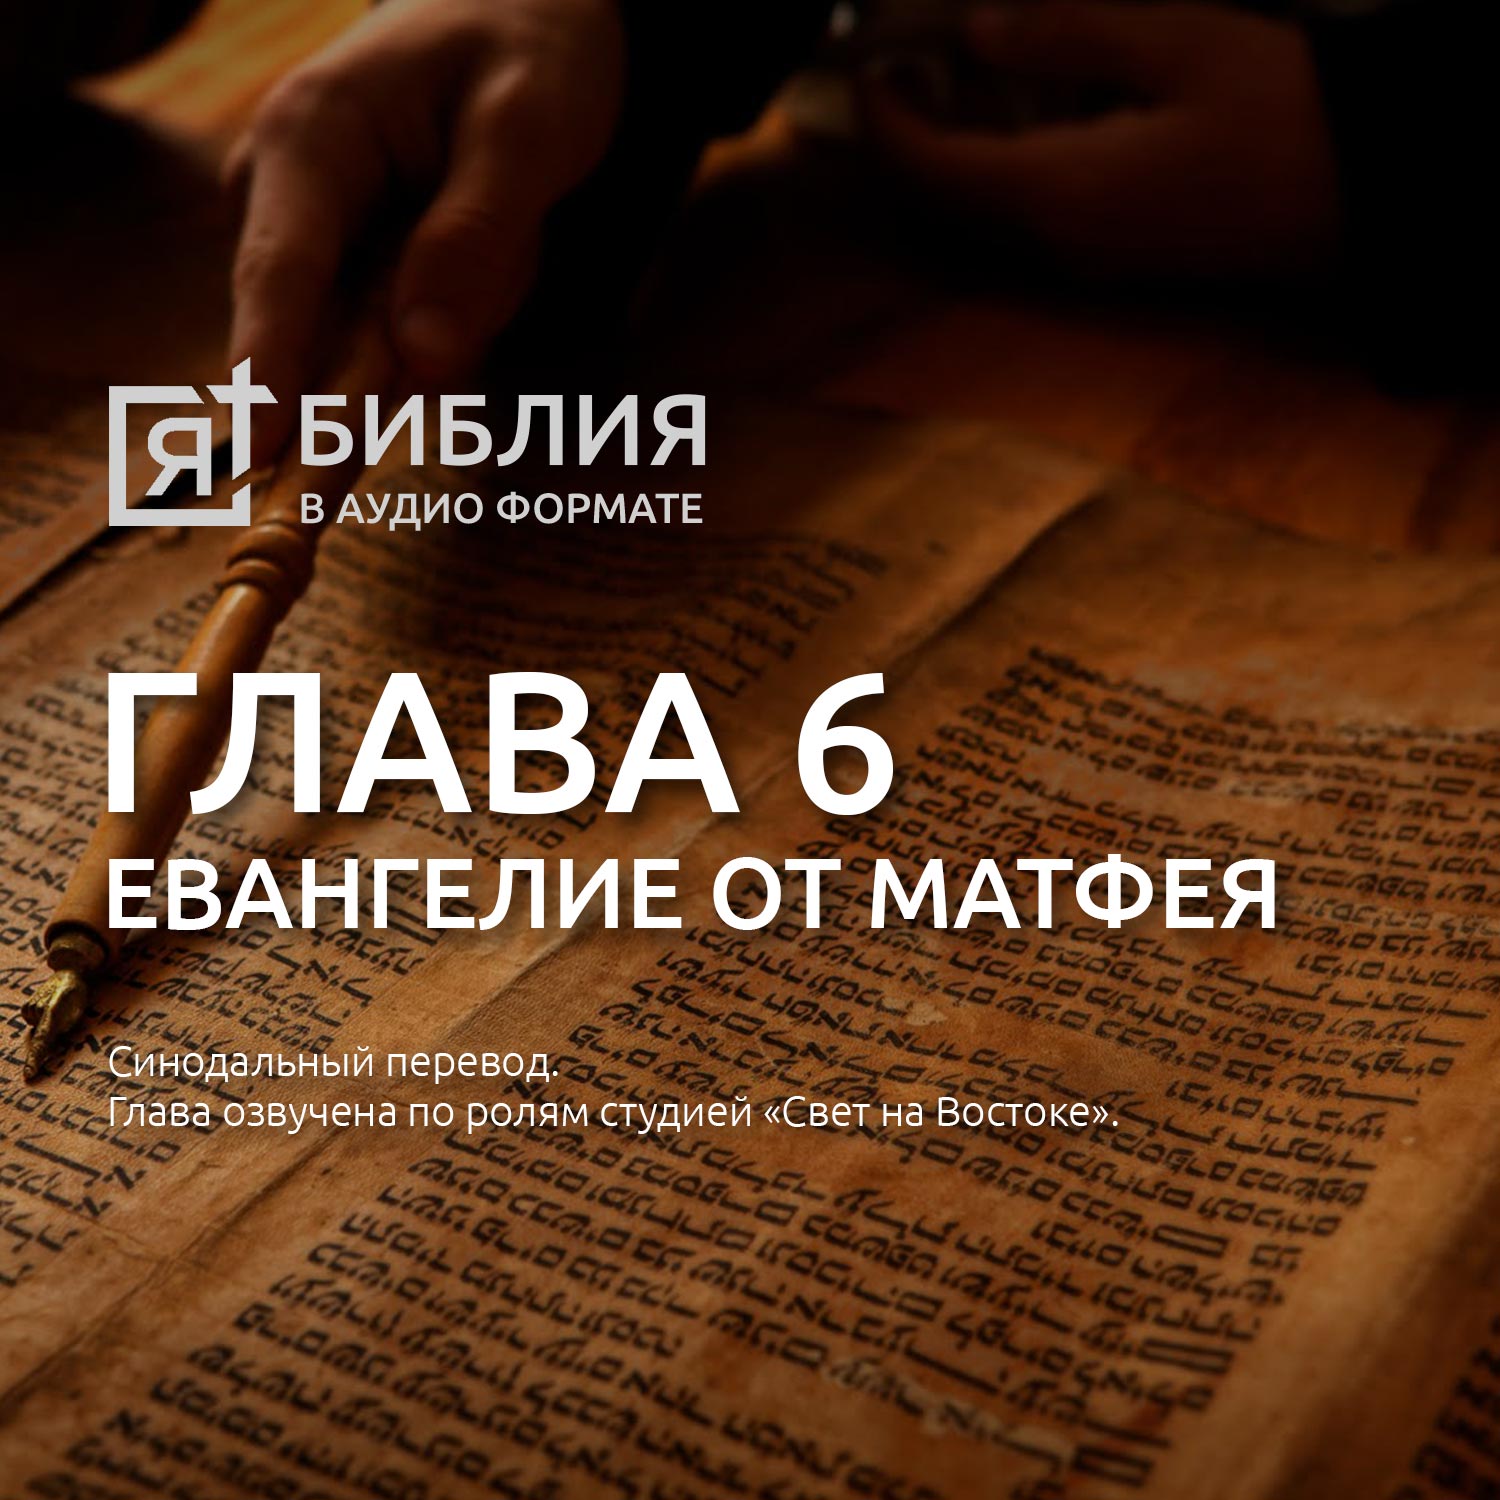 Глава 6 от матфея. Библия онлайн – все о библии